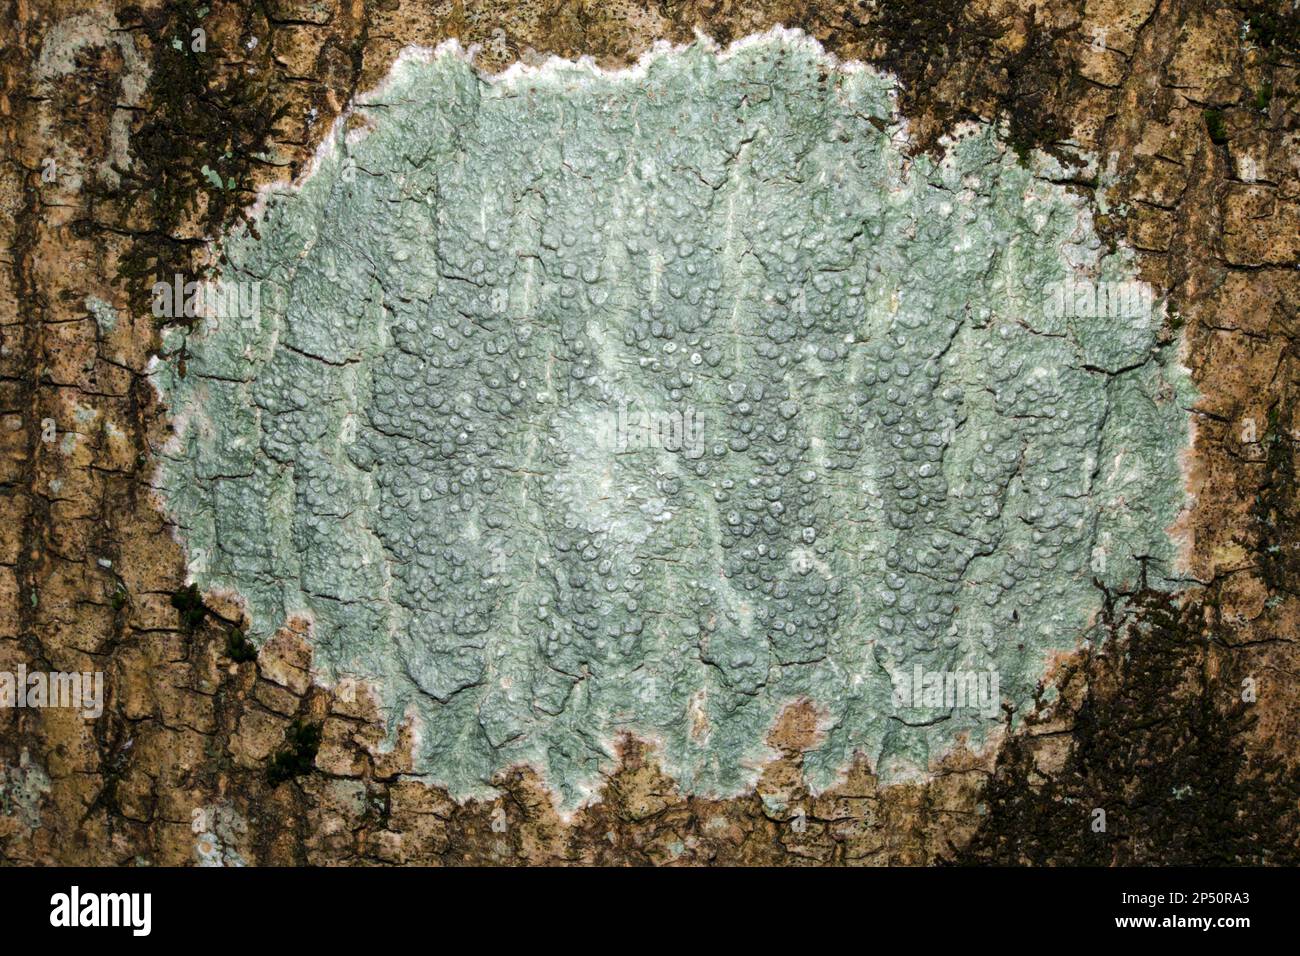 Pertusaria pertusa (pepperpot lichen) est un lichen croûteux commun sur les arbres mais aussi sur les roches. Il est originaire de l'Eurasie et de l'Afrique australe. Banque D'Images